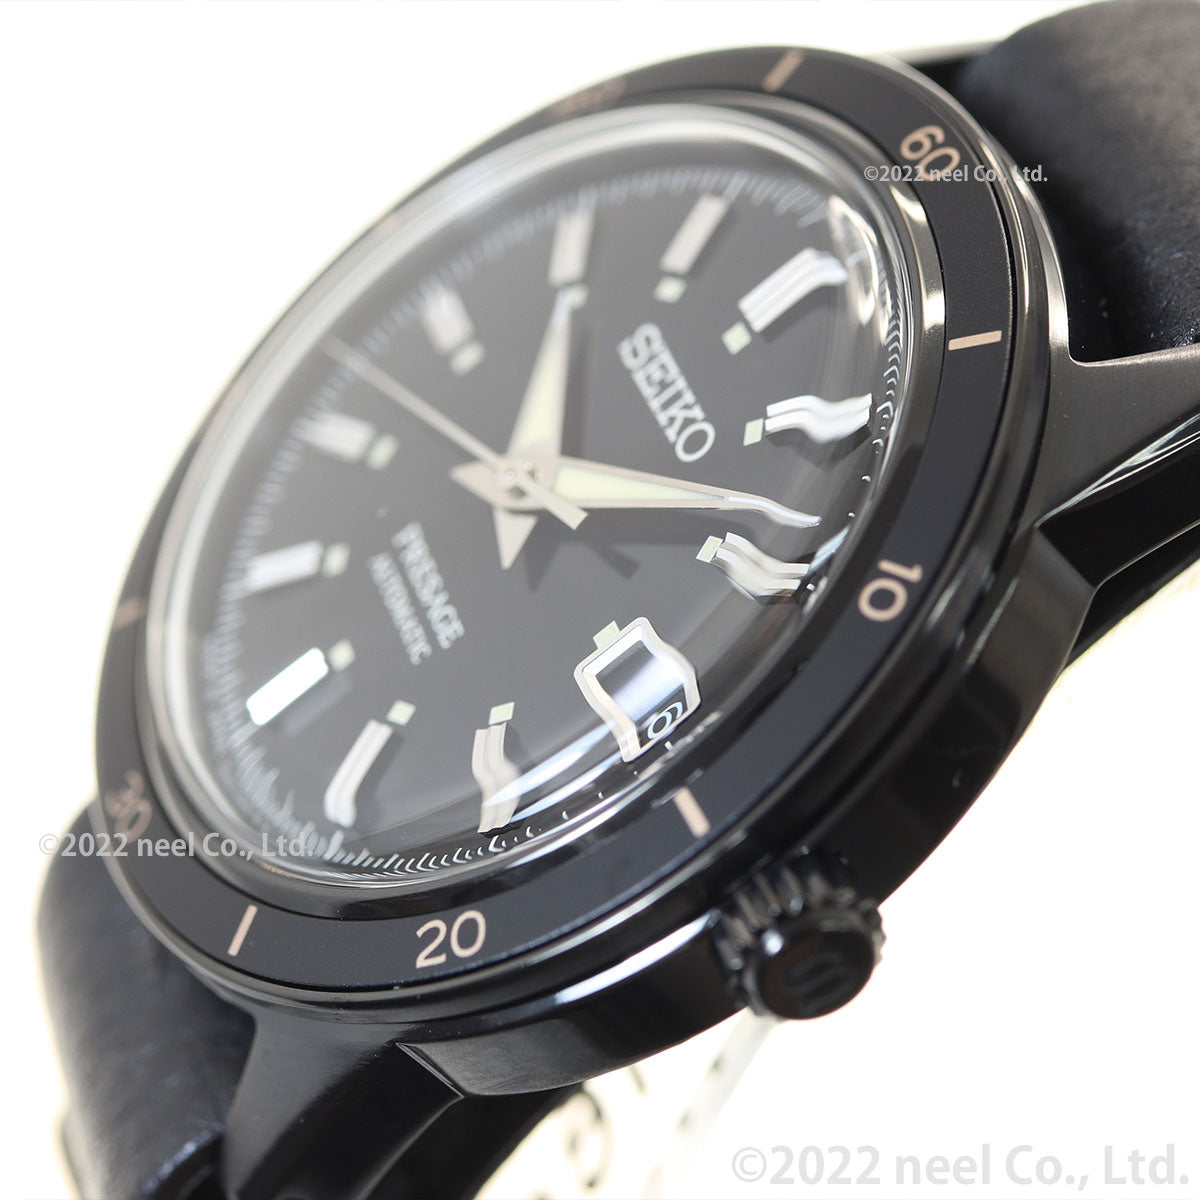 セイコー プレザージュ SEIKO PRESAGE 自動巻き メカニカル 腕時計 メンズ ベーシックライン セミスケルトン SARY215 ブラック